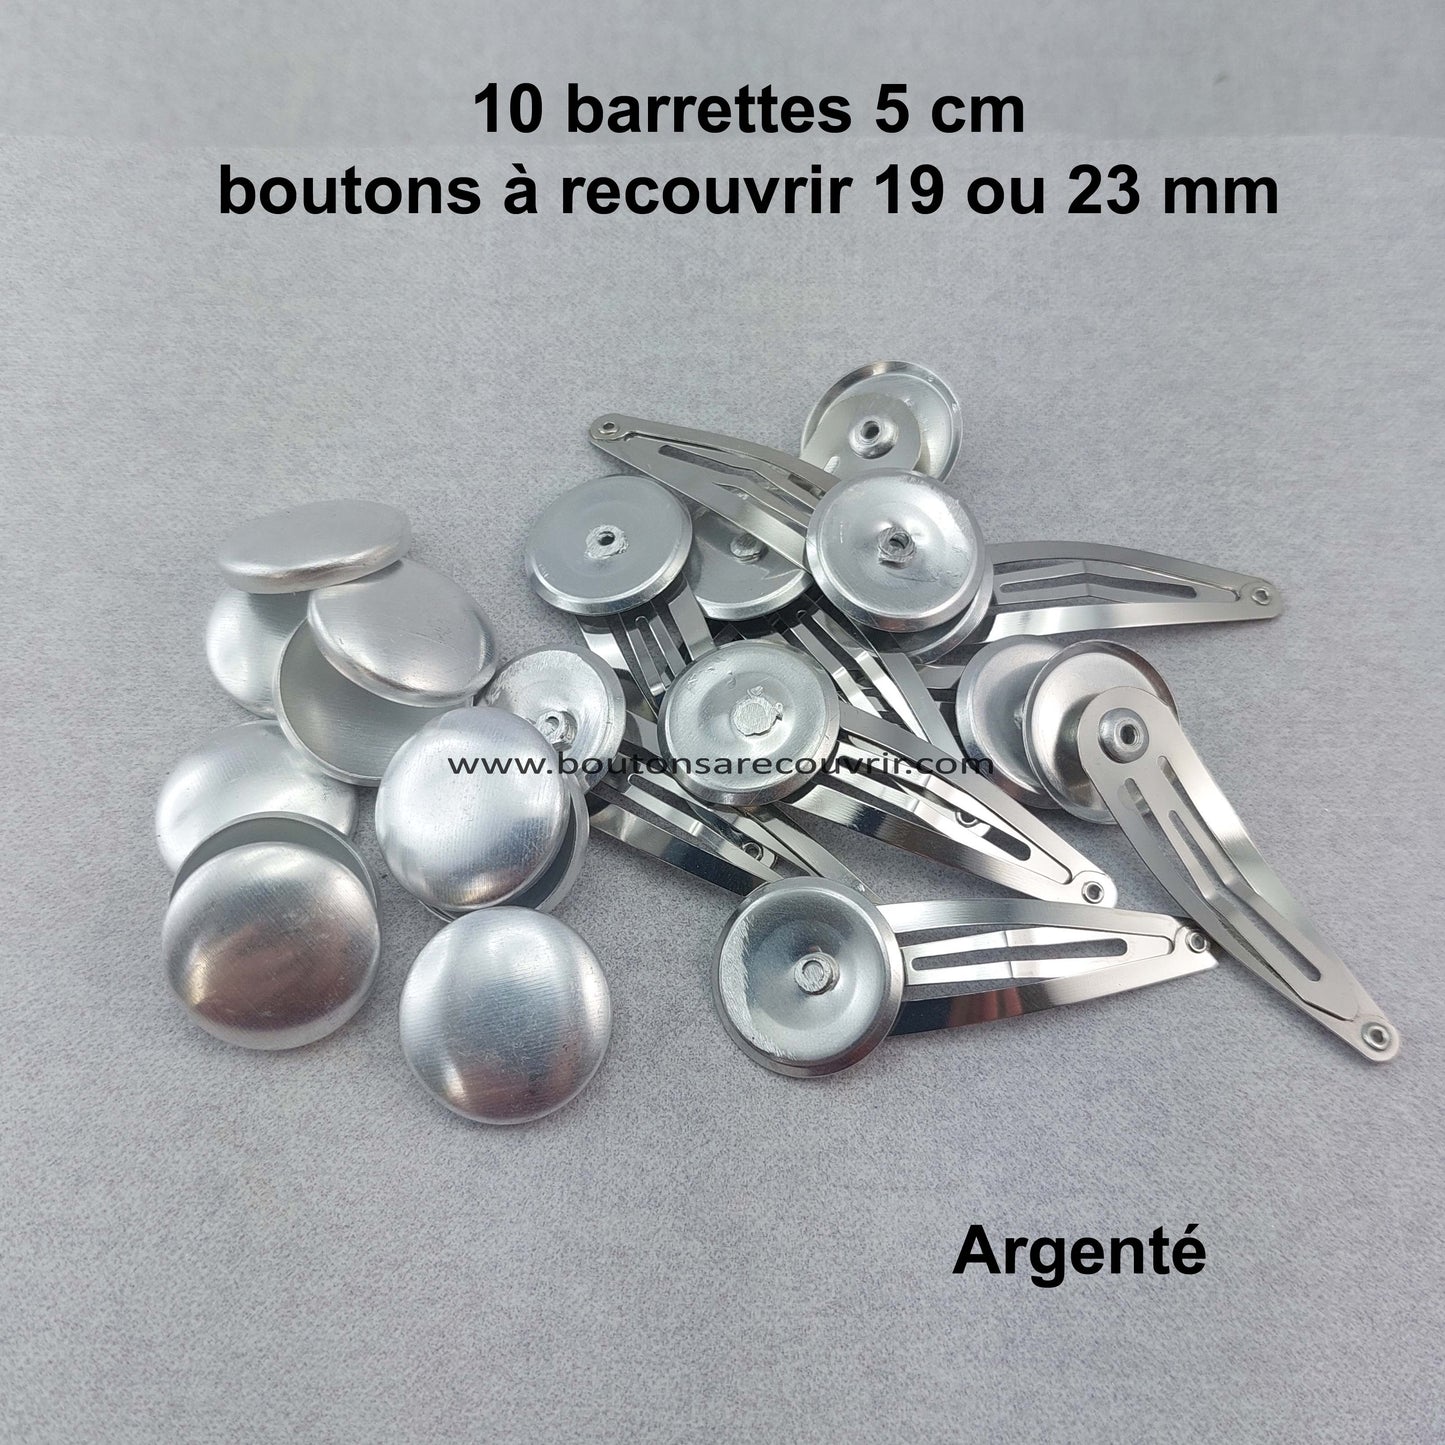 Barrettes - boutons à recouvrir 19 ou 23 mm personnalisables